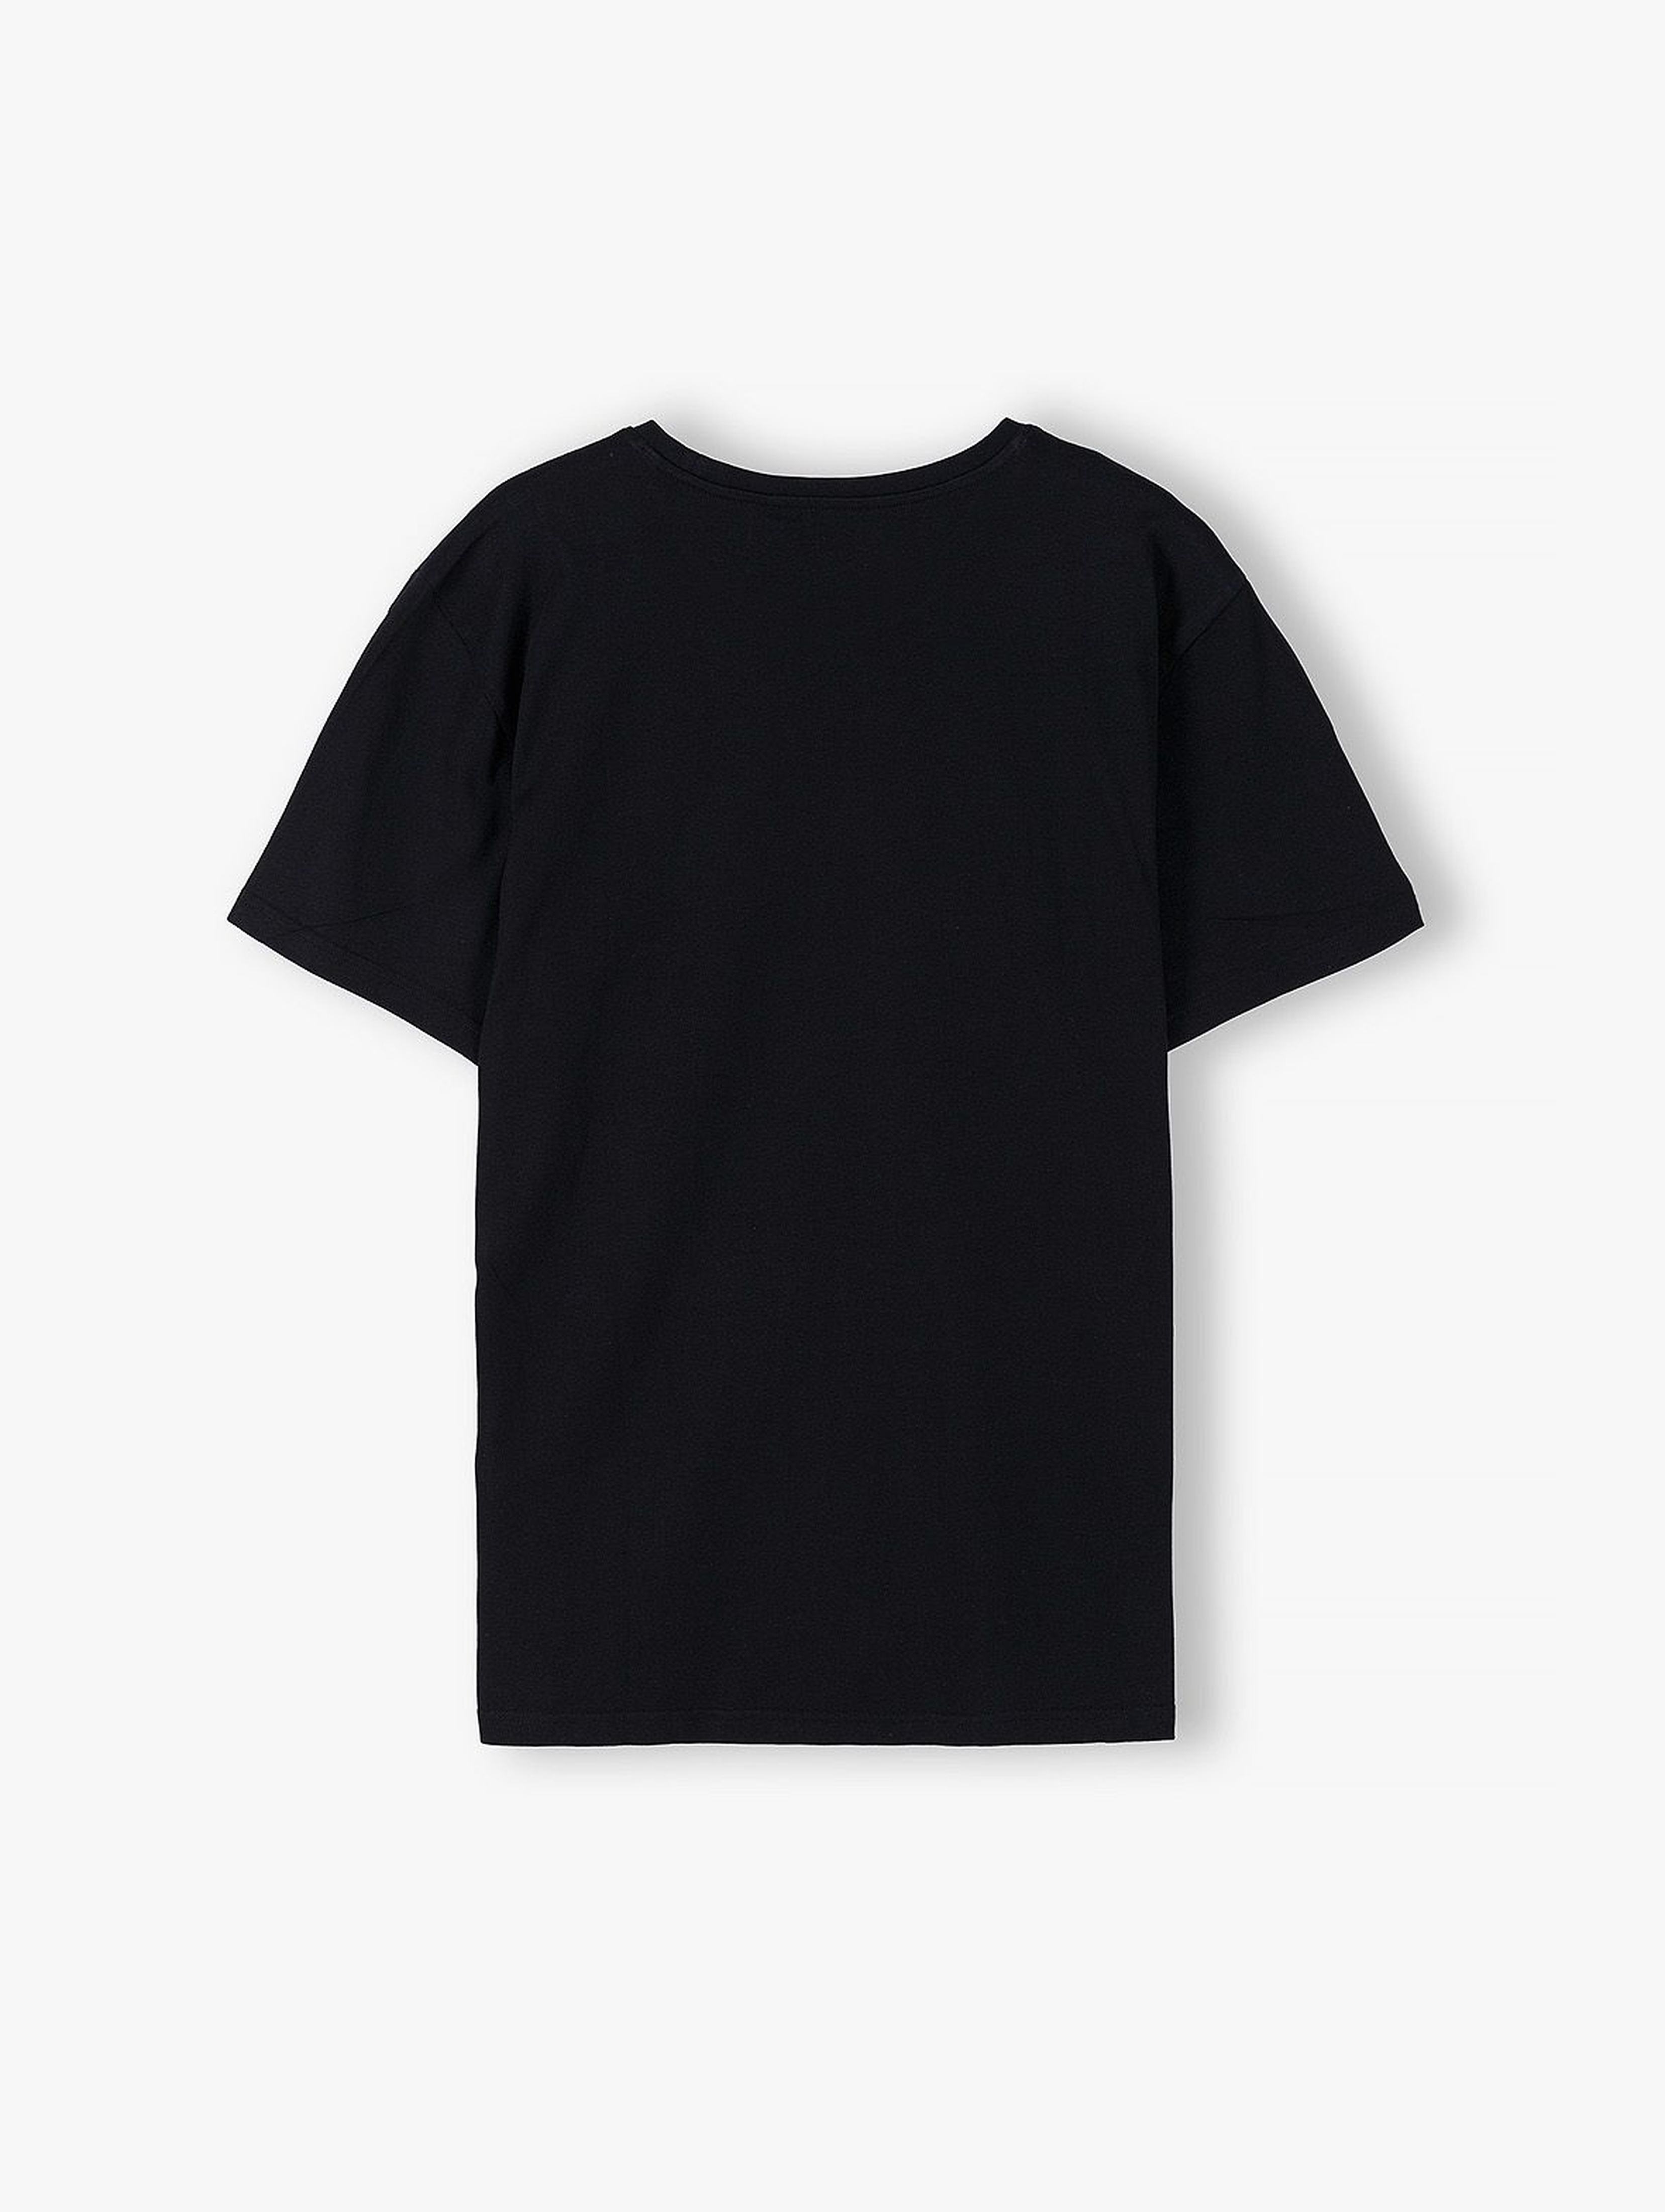 Bawełniany t-shirt dla mężczyzny czarny z napisem- Super Tata - ubrania dla całej rodziny